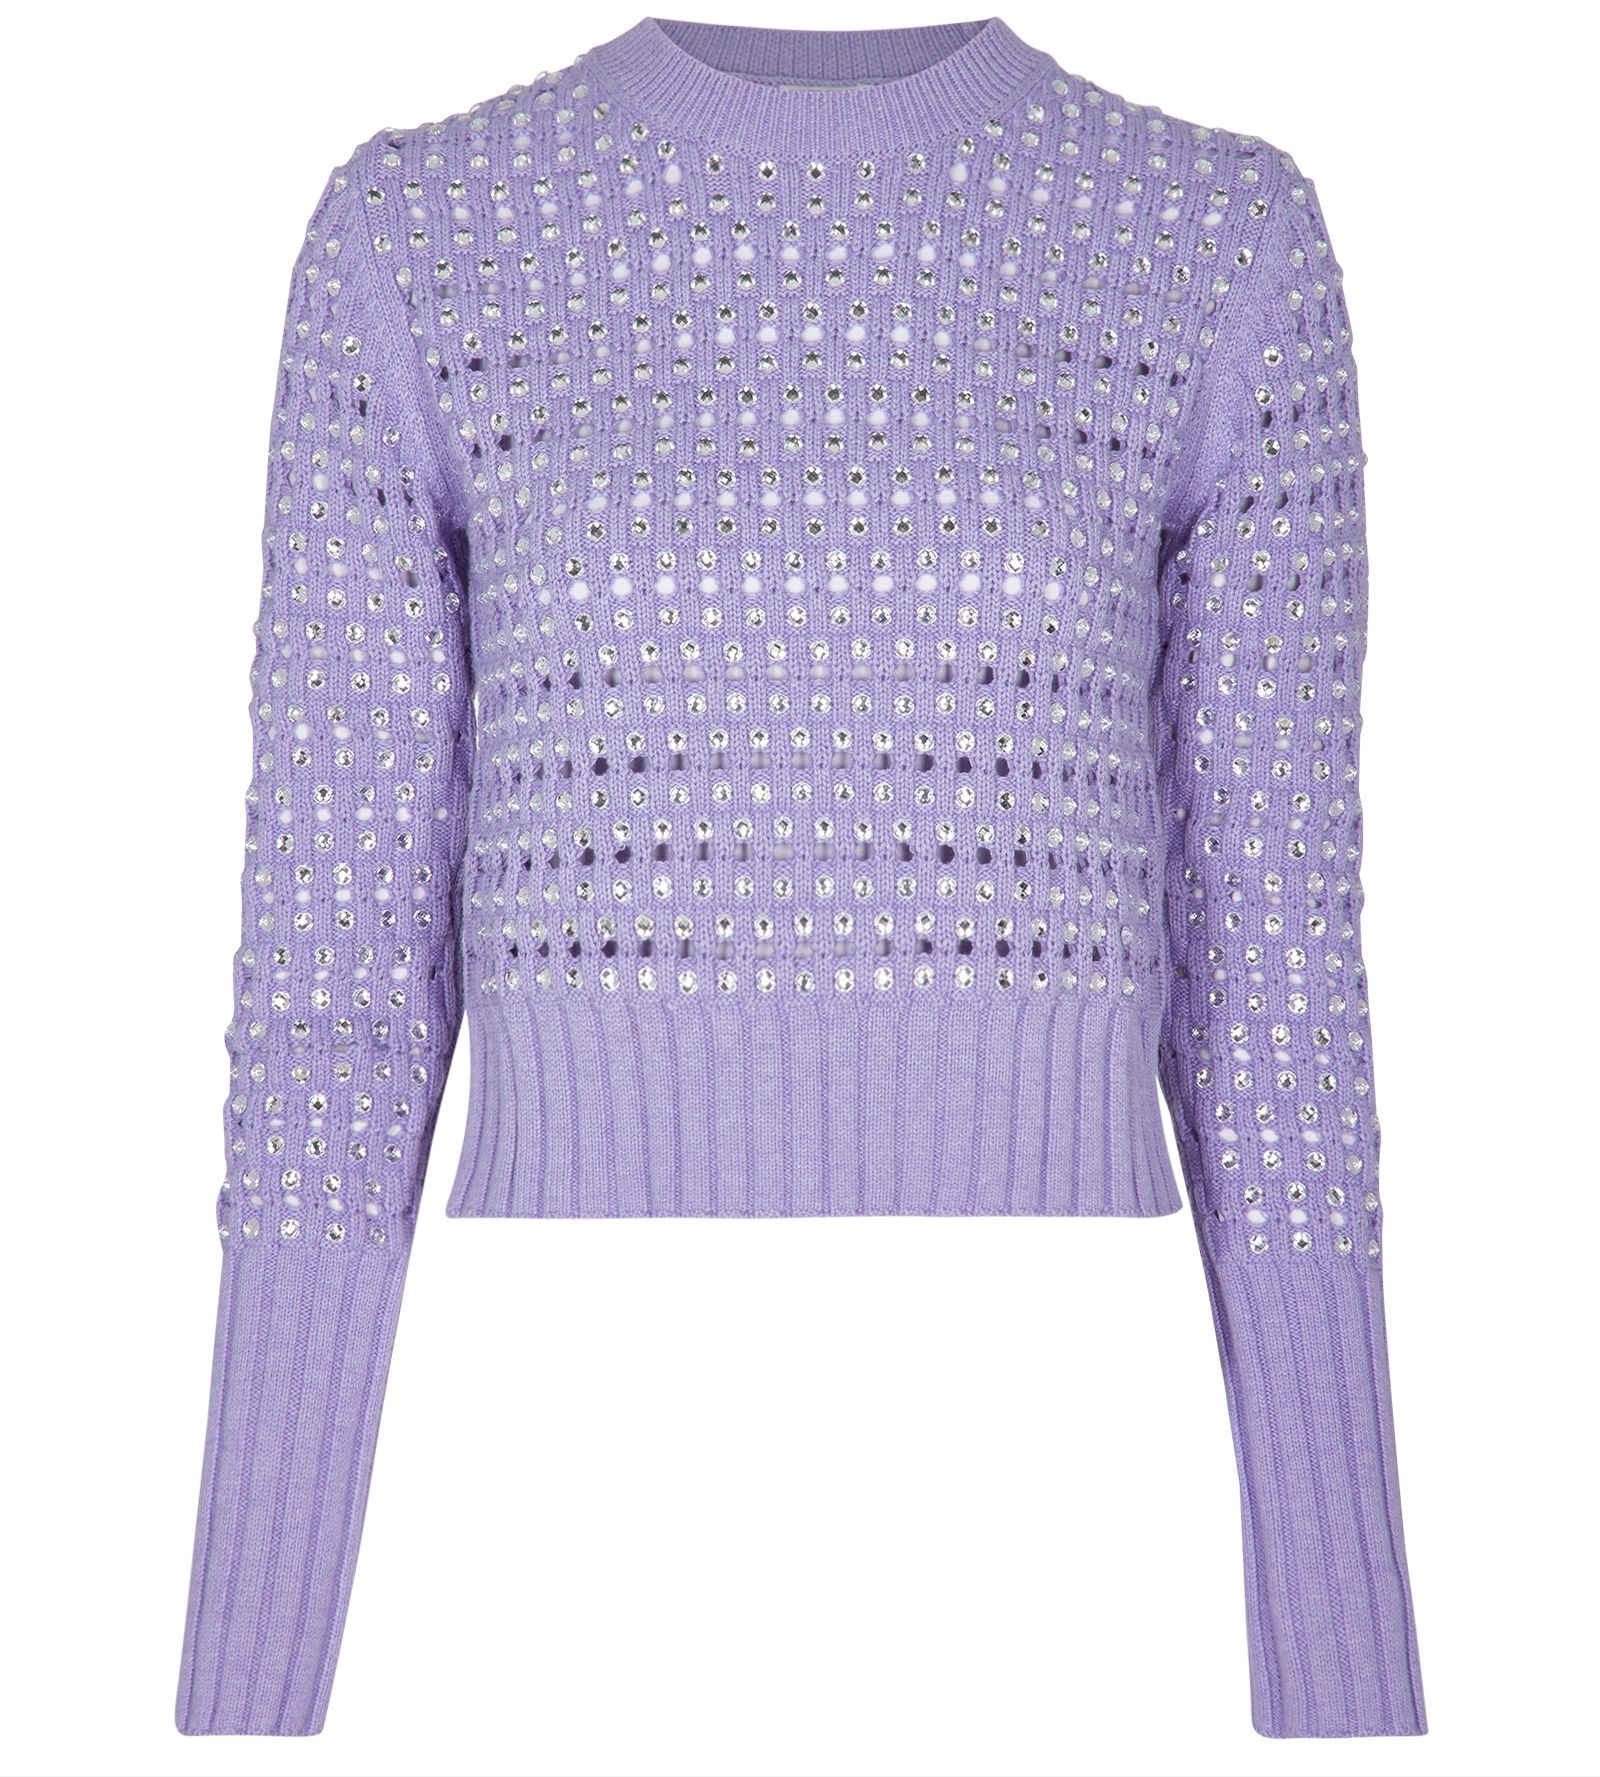 Kenzo Crystal Embellished Sweater, Jumpers - Designer Exchange | Buy ...